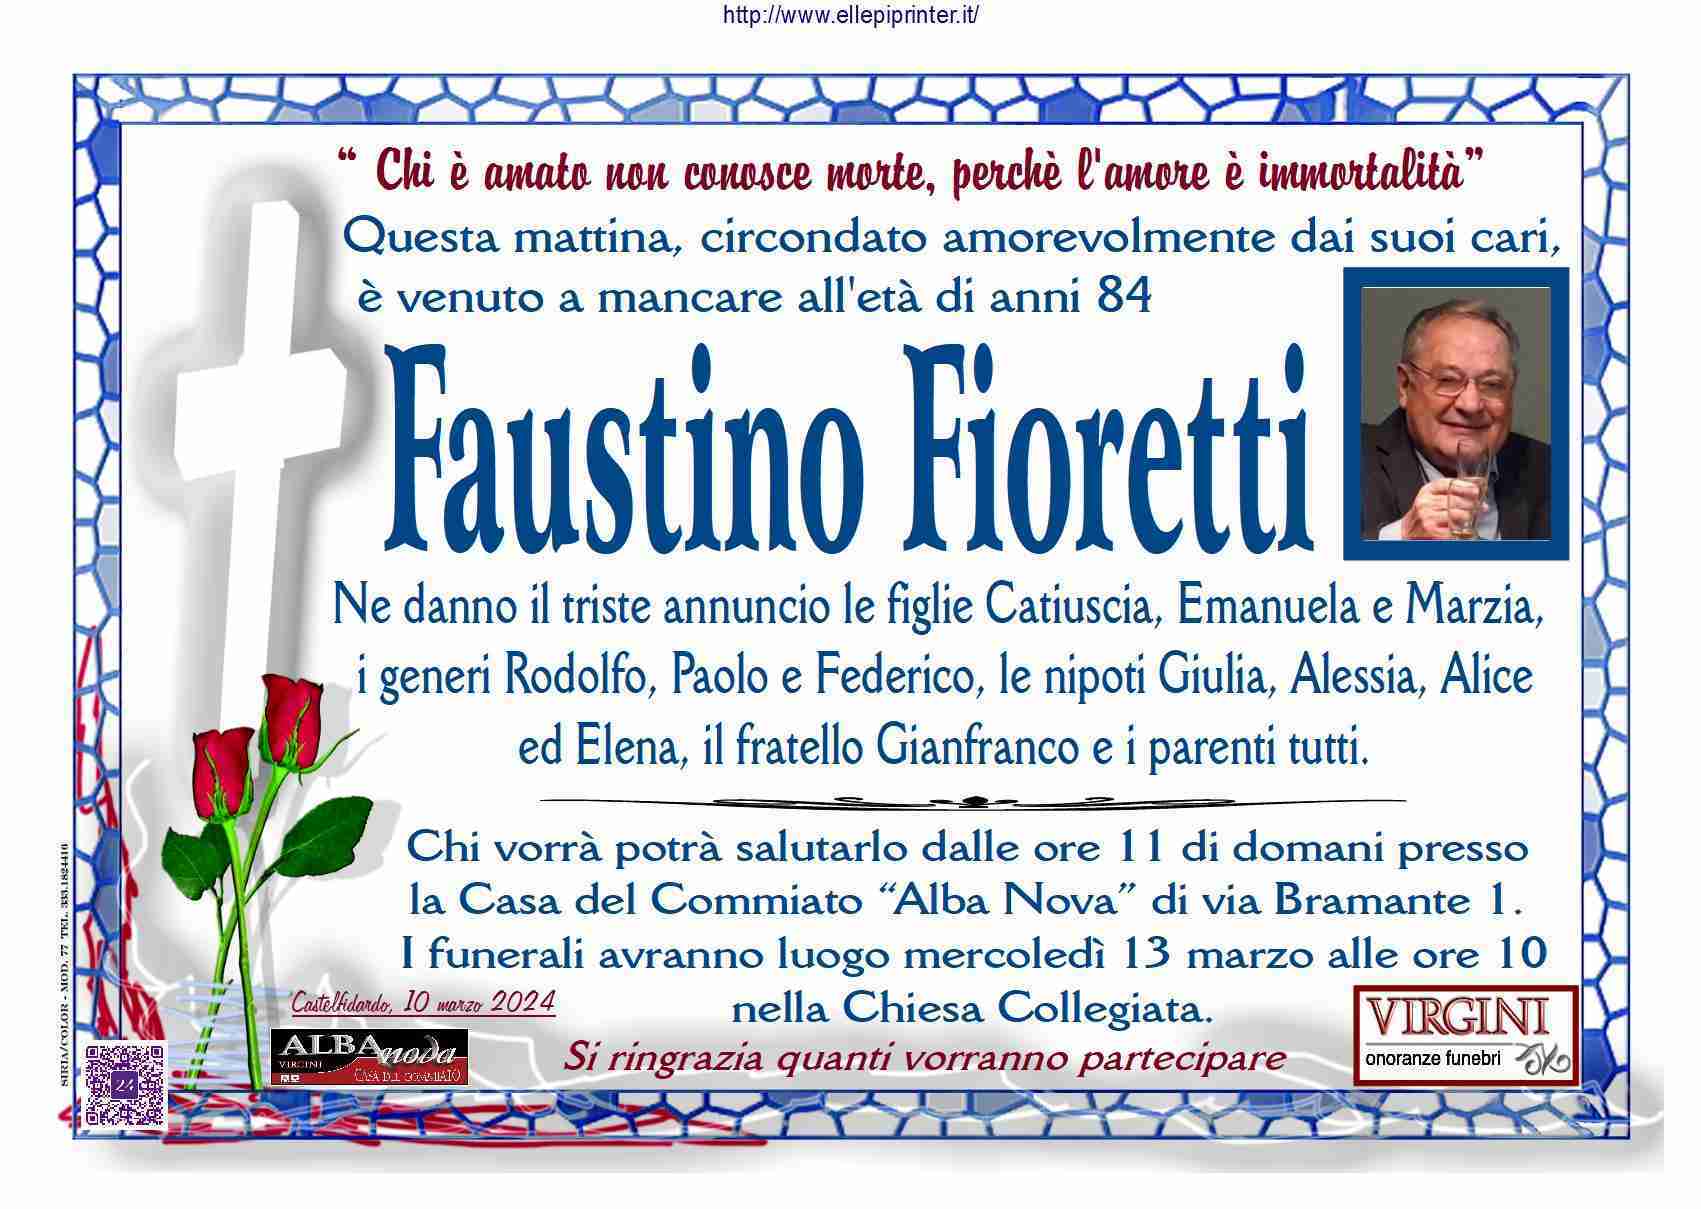 Faustino Fioretti